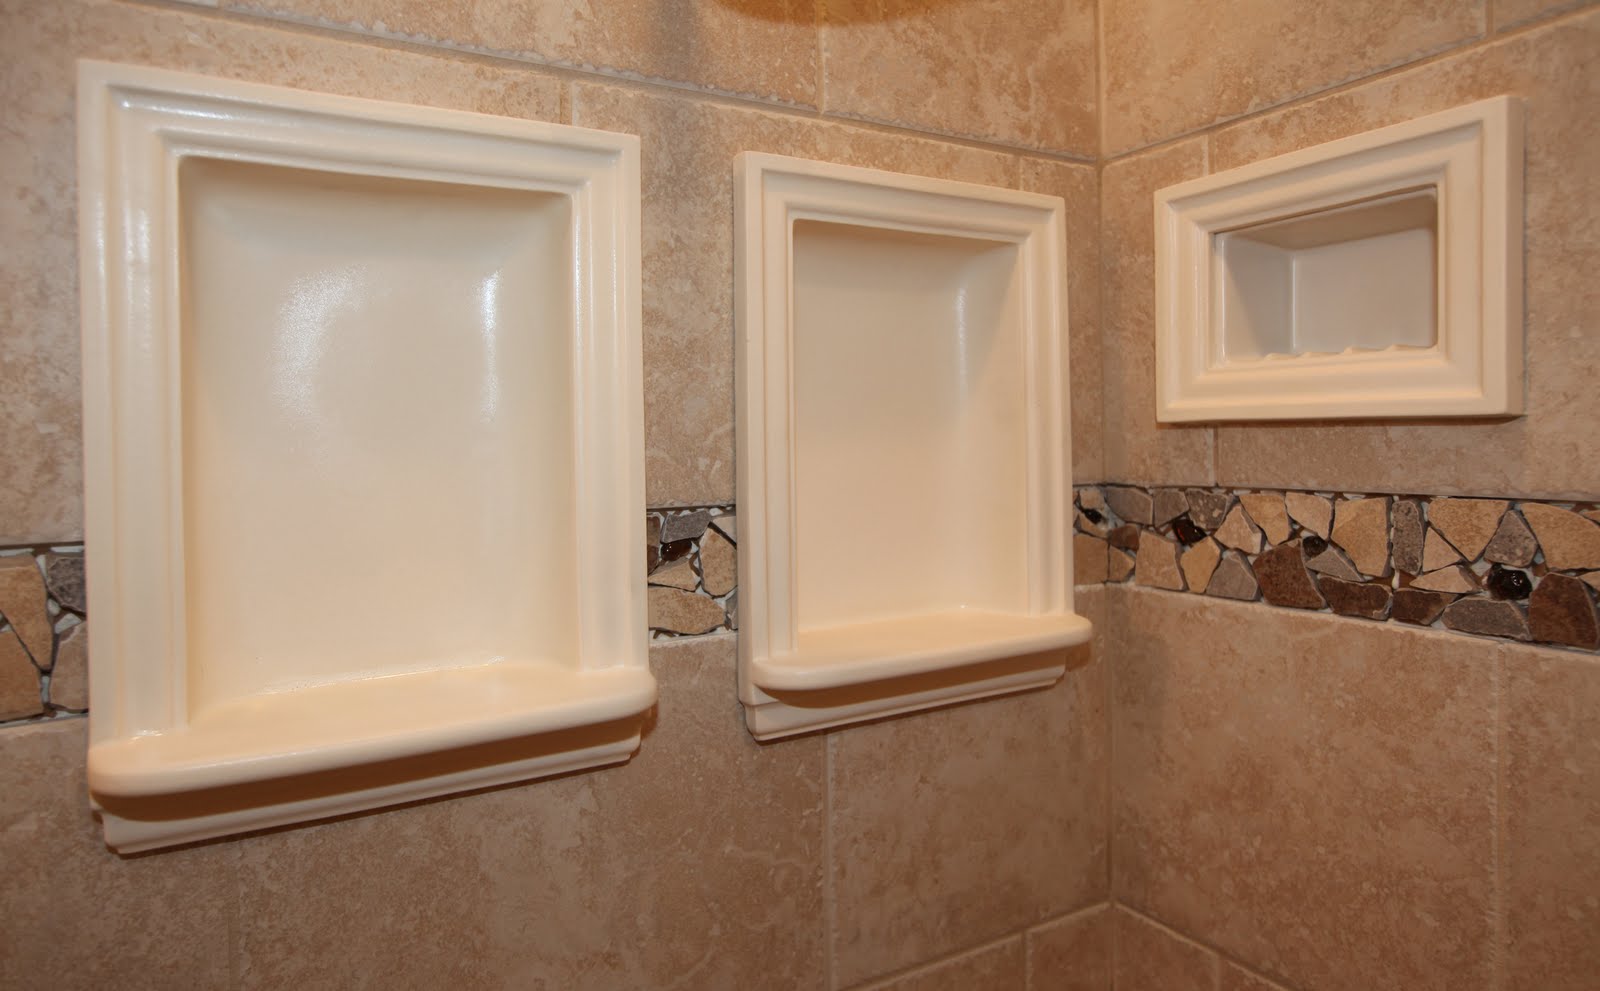 bathroom shower bases Bathroom Remodeling Design Ideas Tile Shower Niches